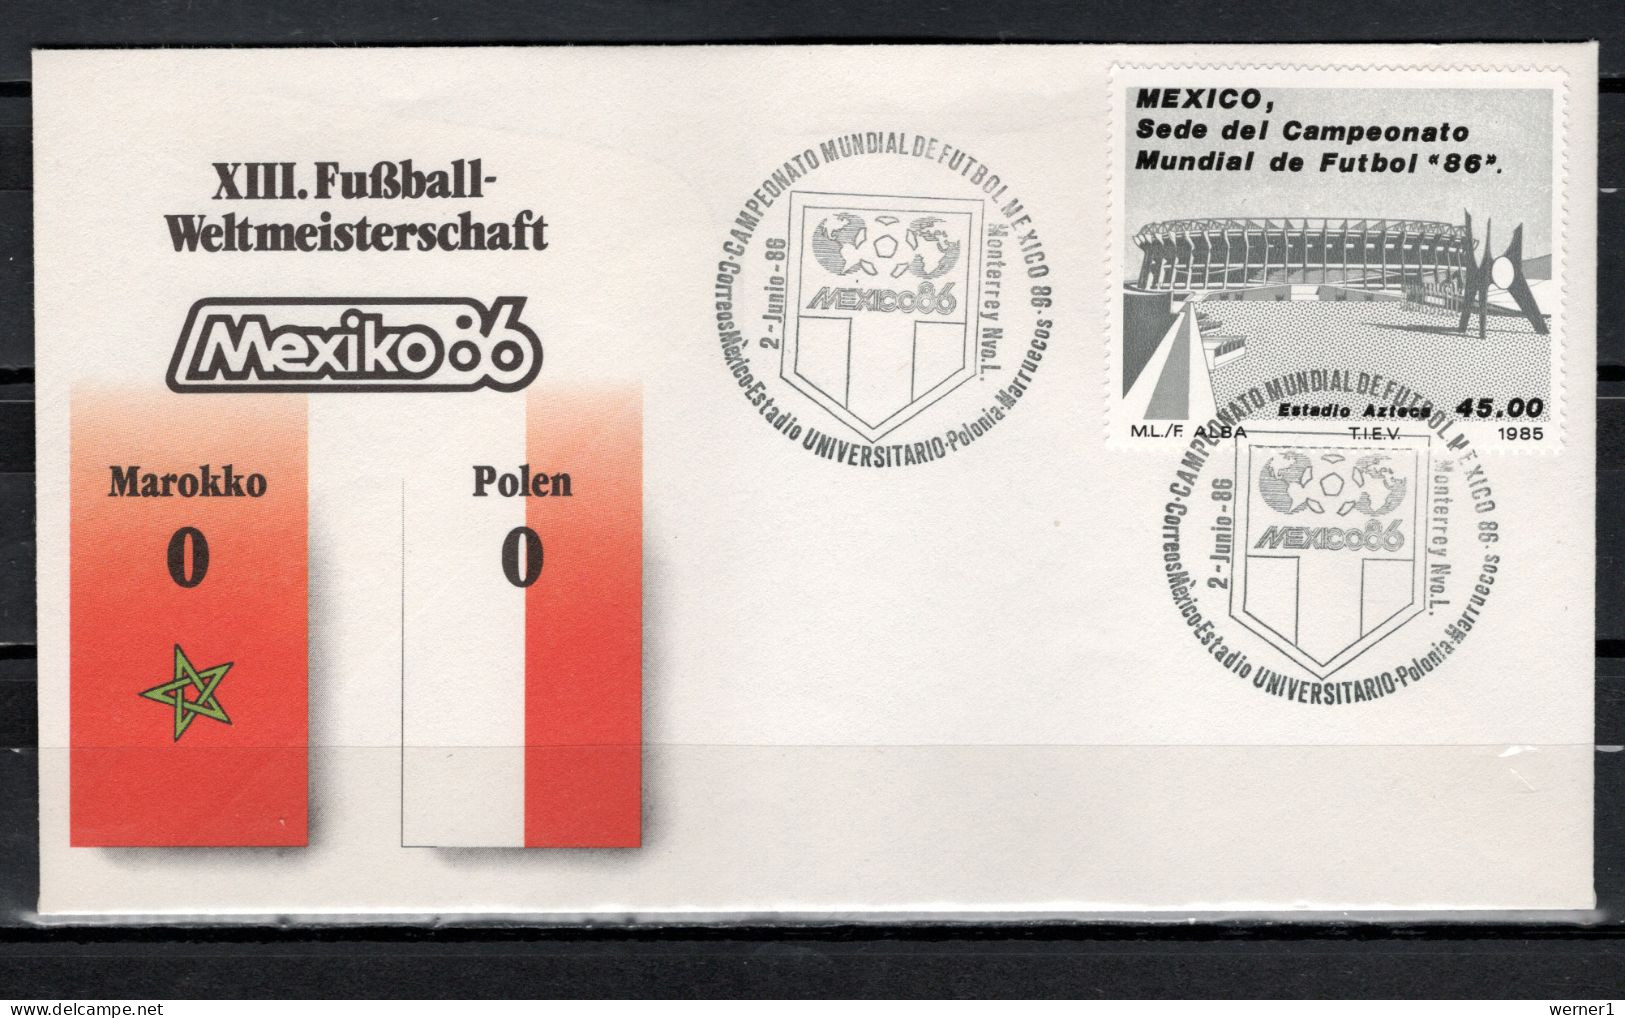 Mexico 1986 Football Soccer World Cup Commemorative Cover Match Morocco - Poland 0 : 0 - 1986 – México